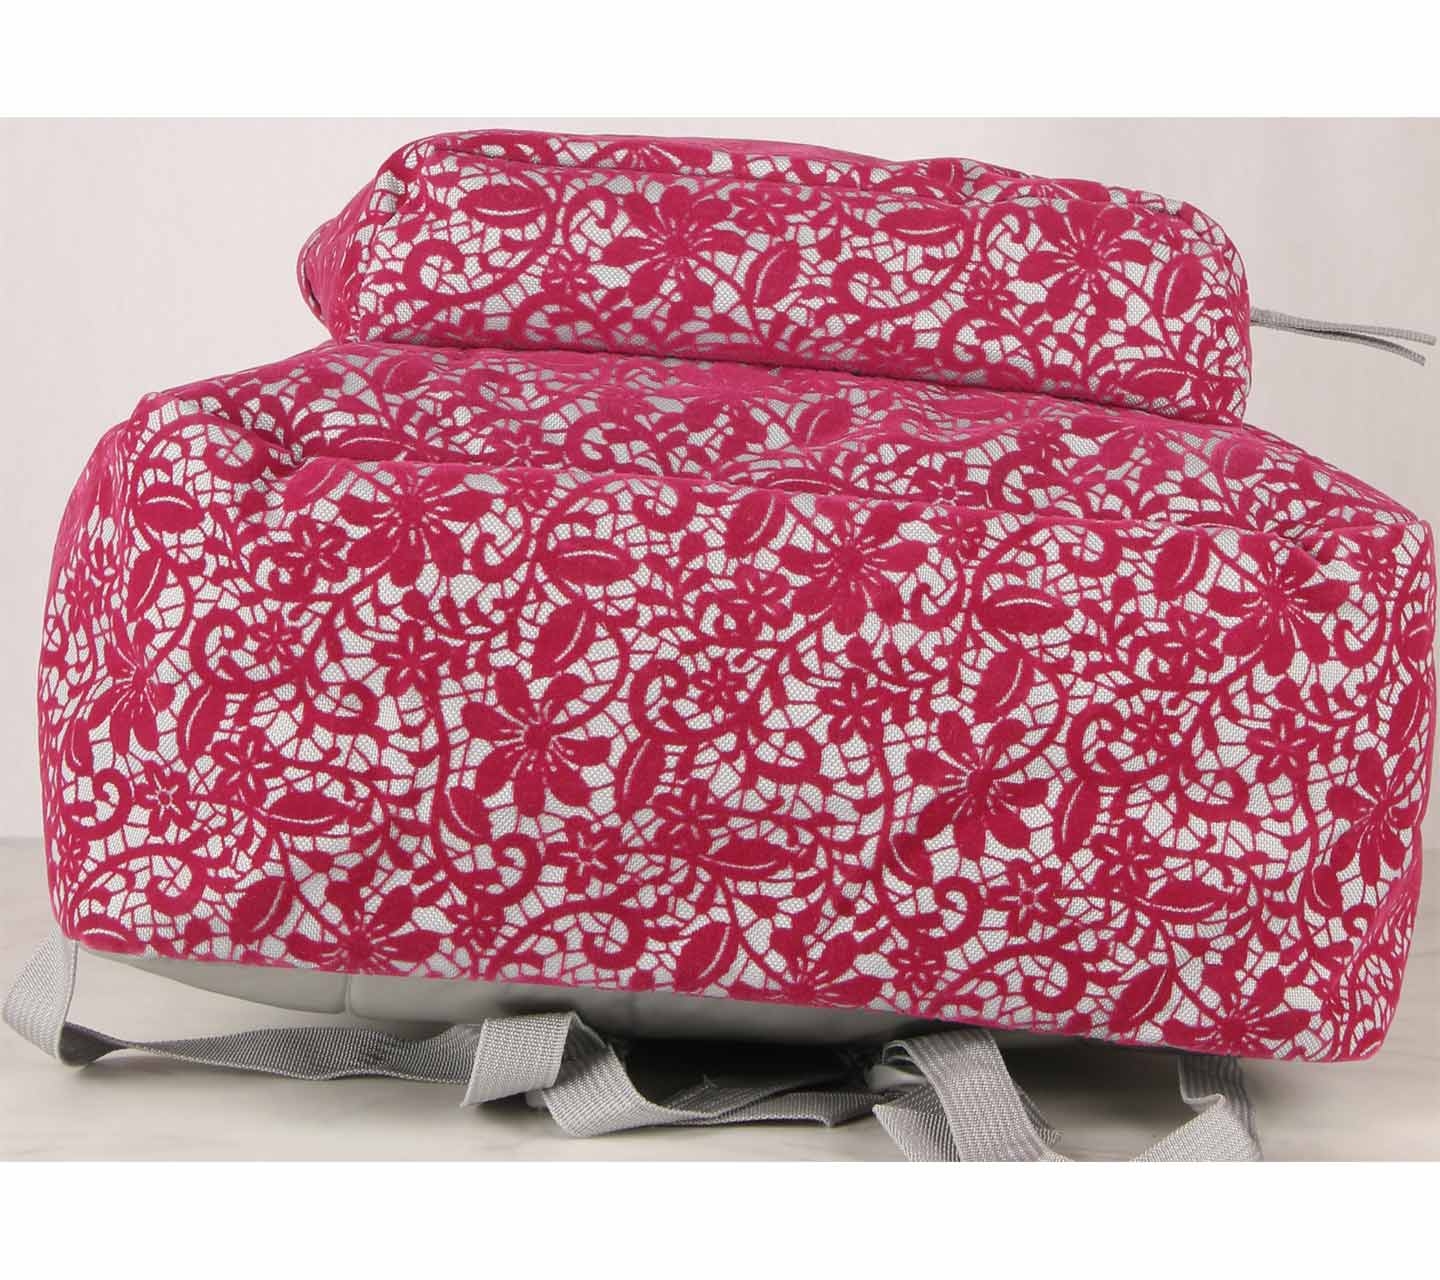 Jansport Pink Floral Backpack